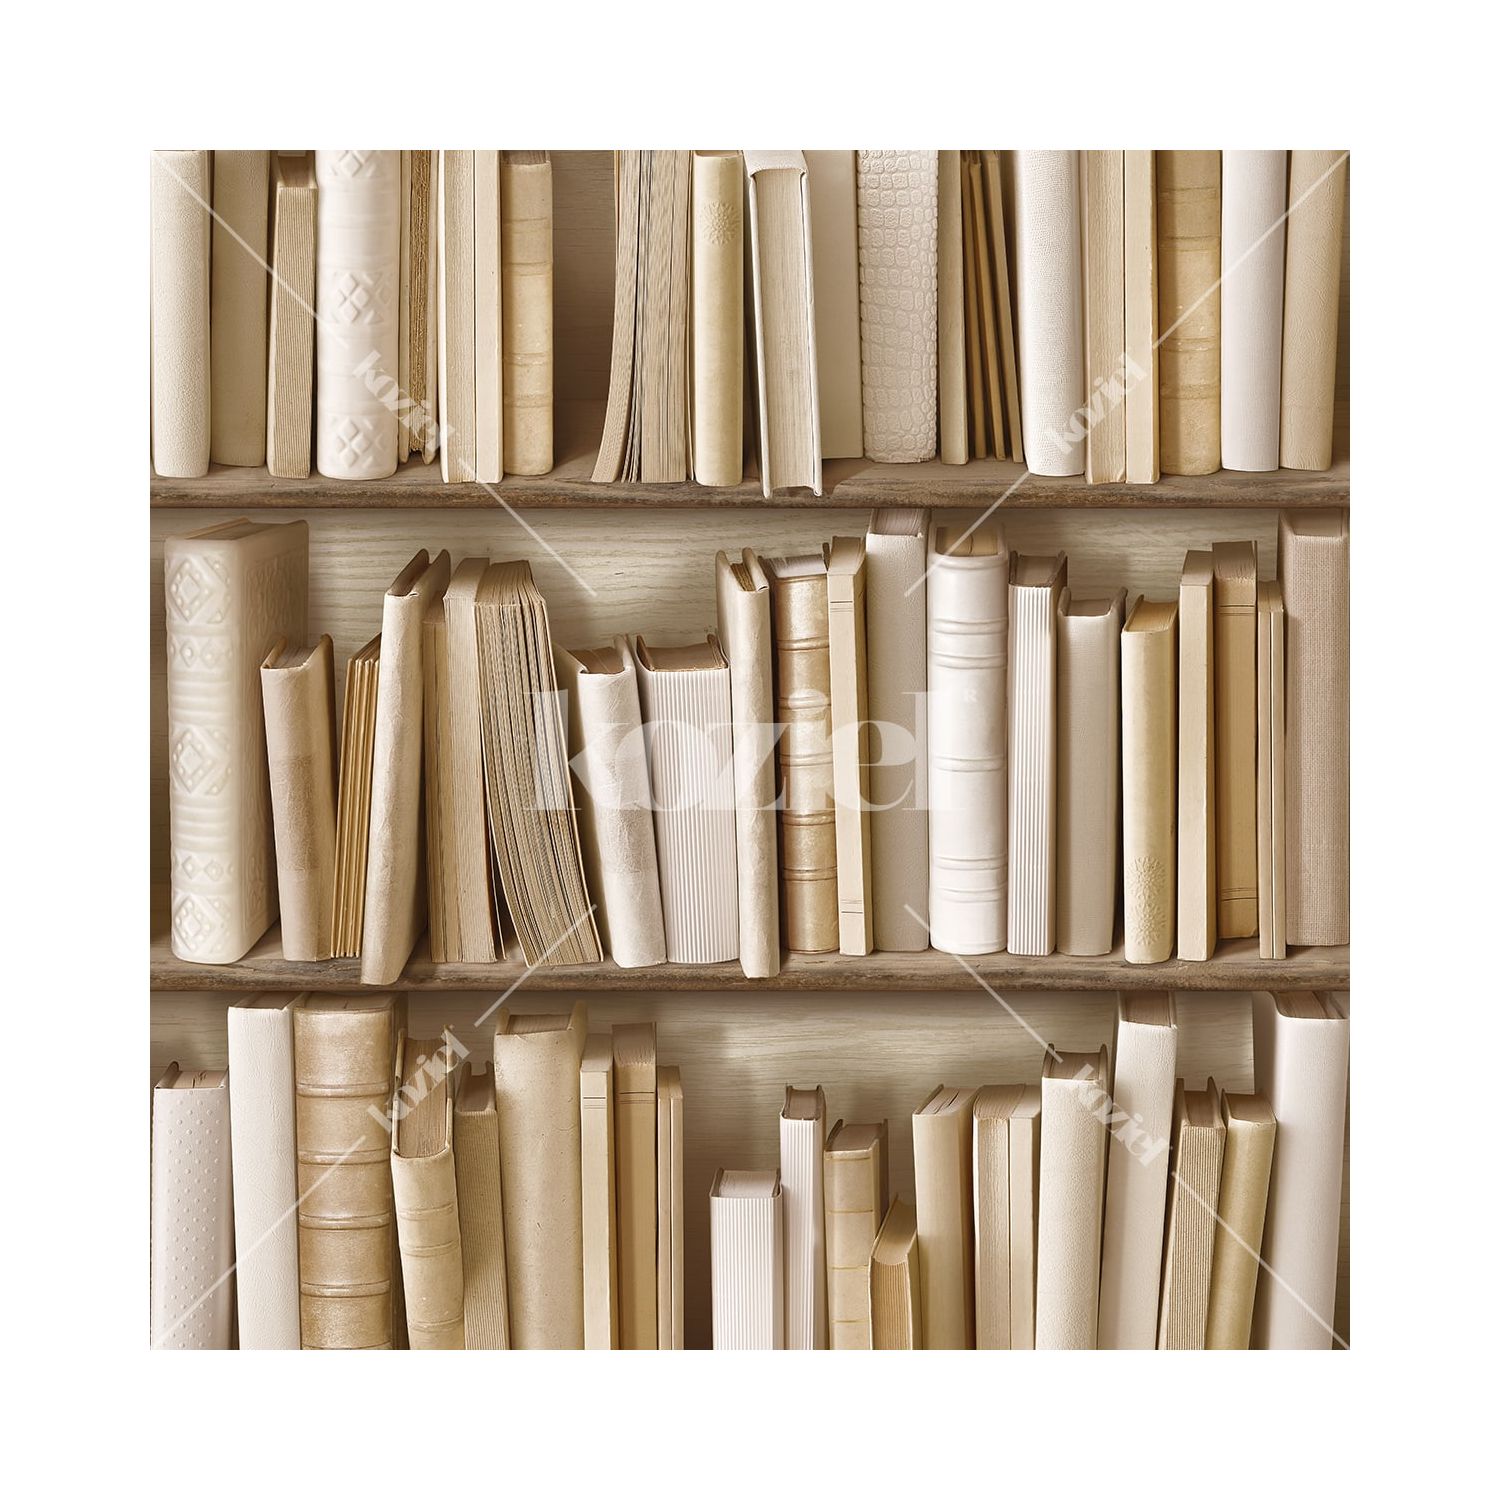 Ivory Bookshelves Wallpaper - Light Brown Aesthetic Brown , HD Wallpaper & Backgrounds